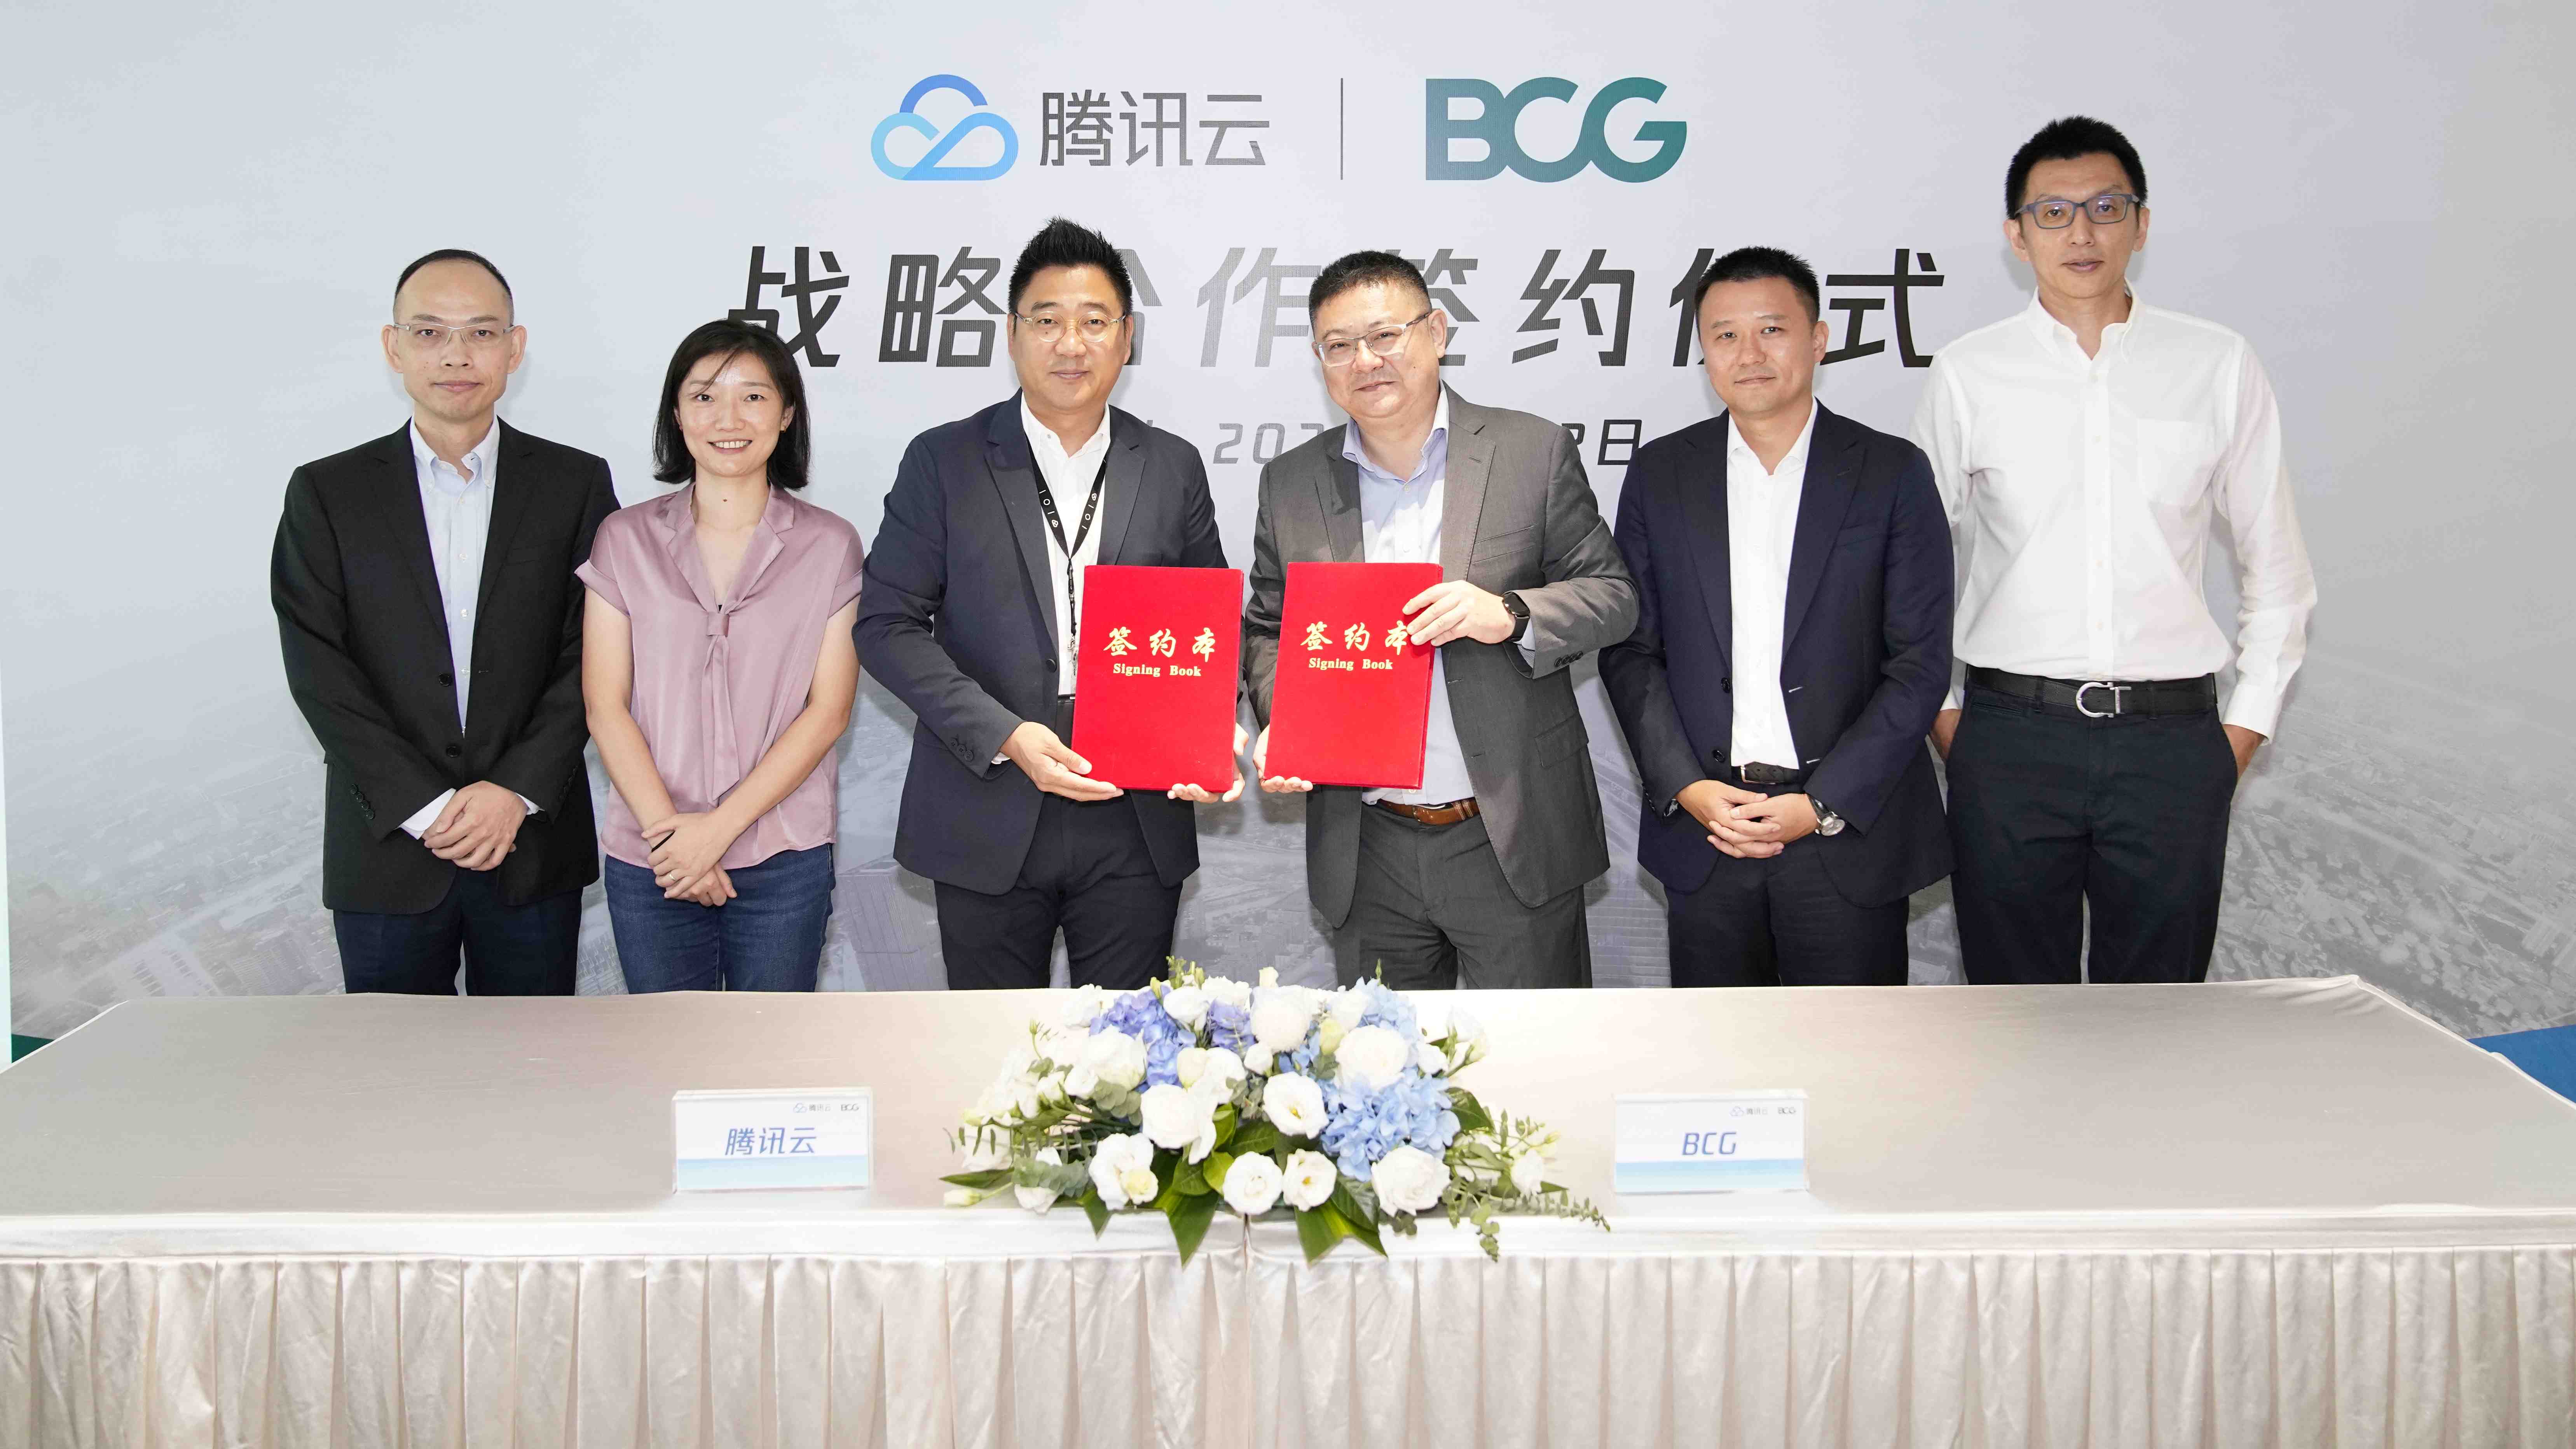 Tencent Cloud, BCG announce strategic alliance 